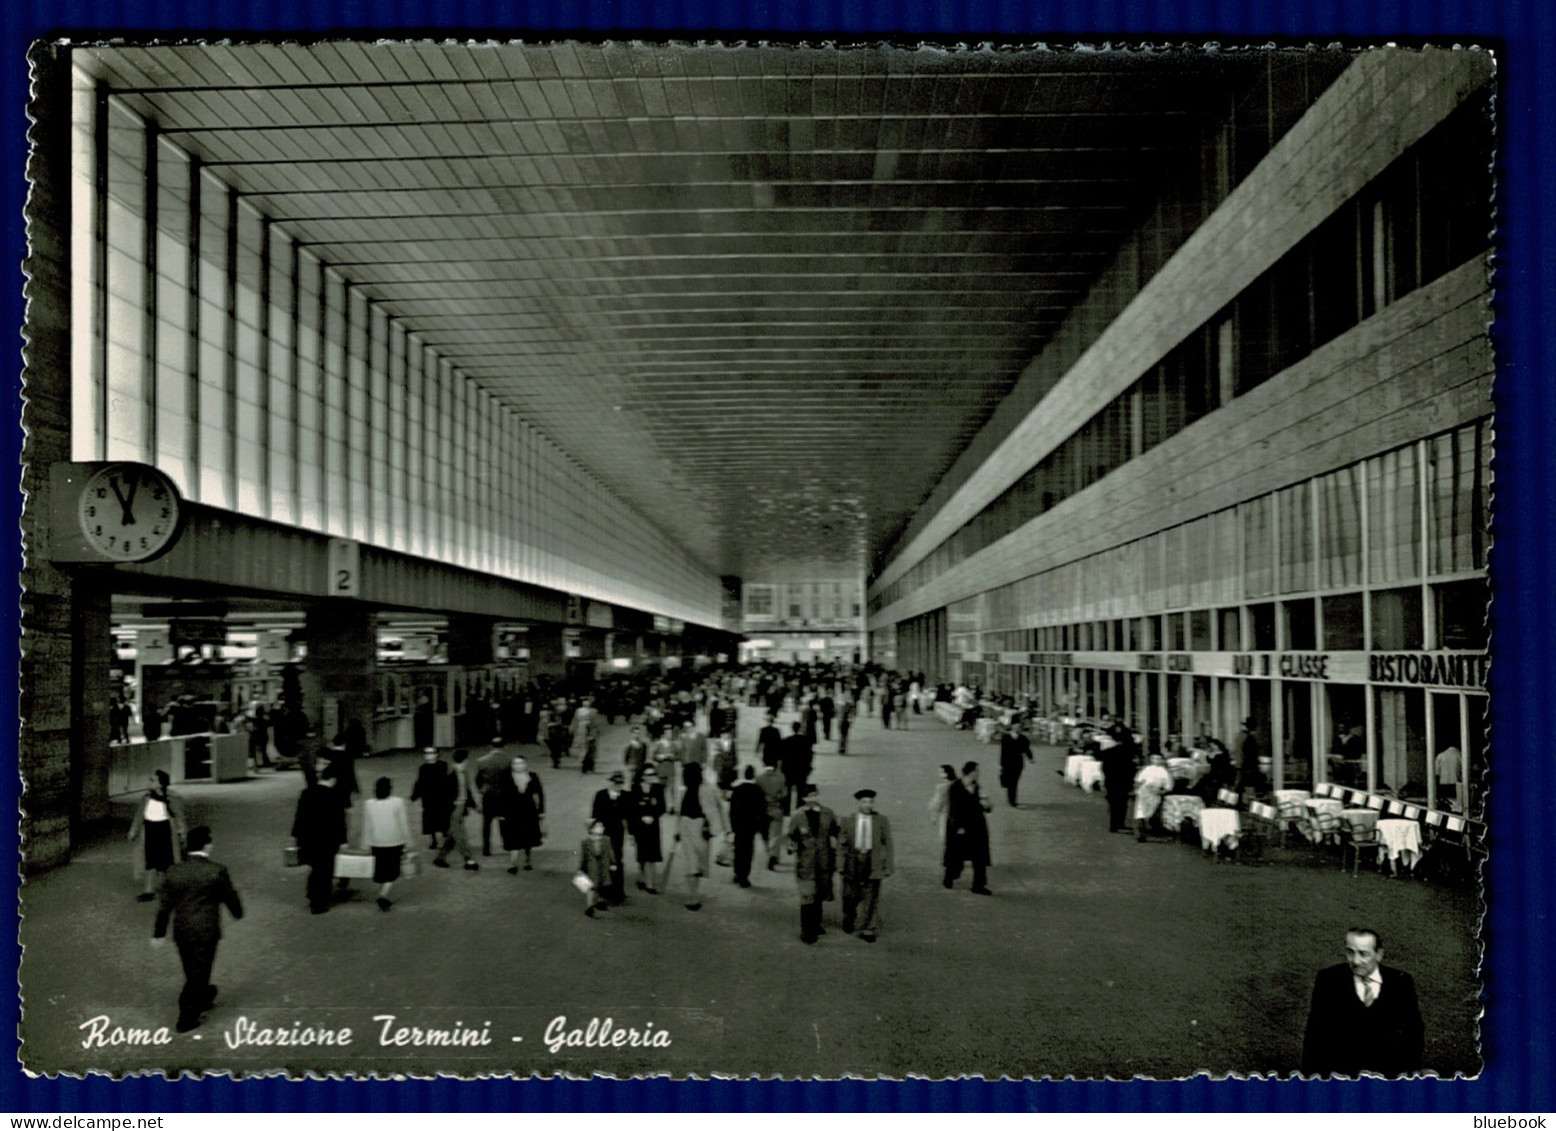 Ref 1613 - Real Photo Postcard - Railway Station - Roma Stazione Termini Galleria - Italy - Stazione Termini